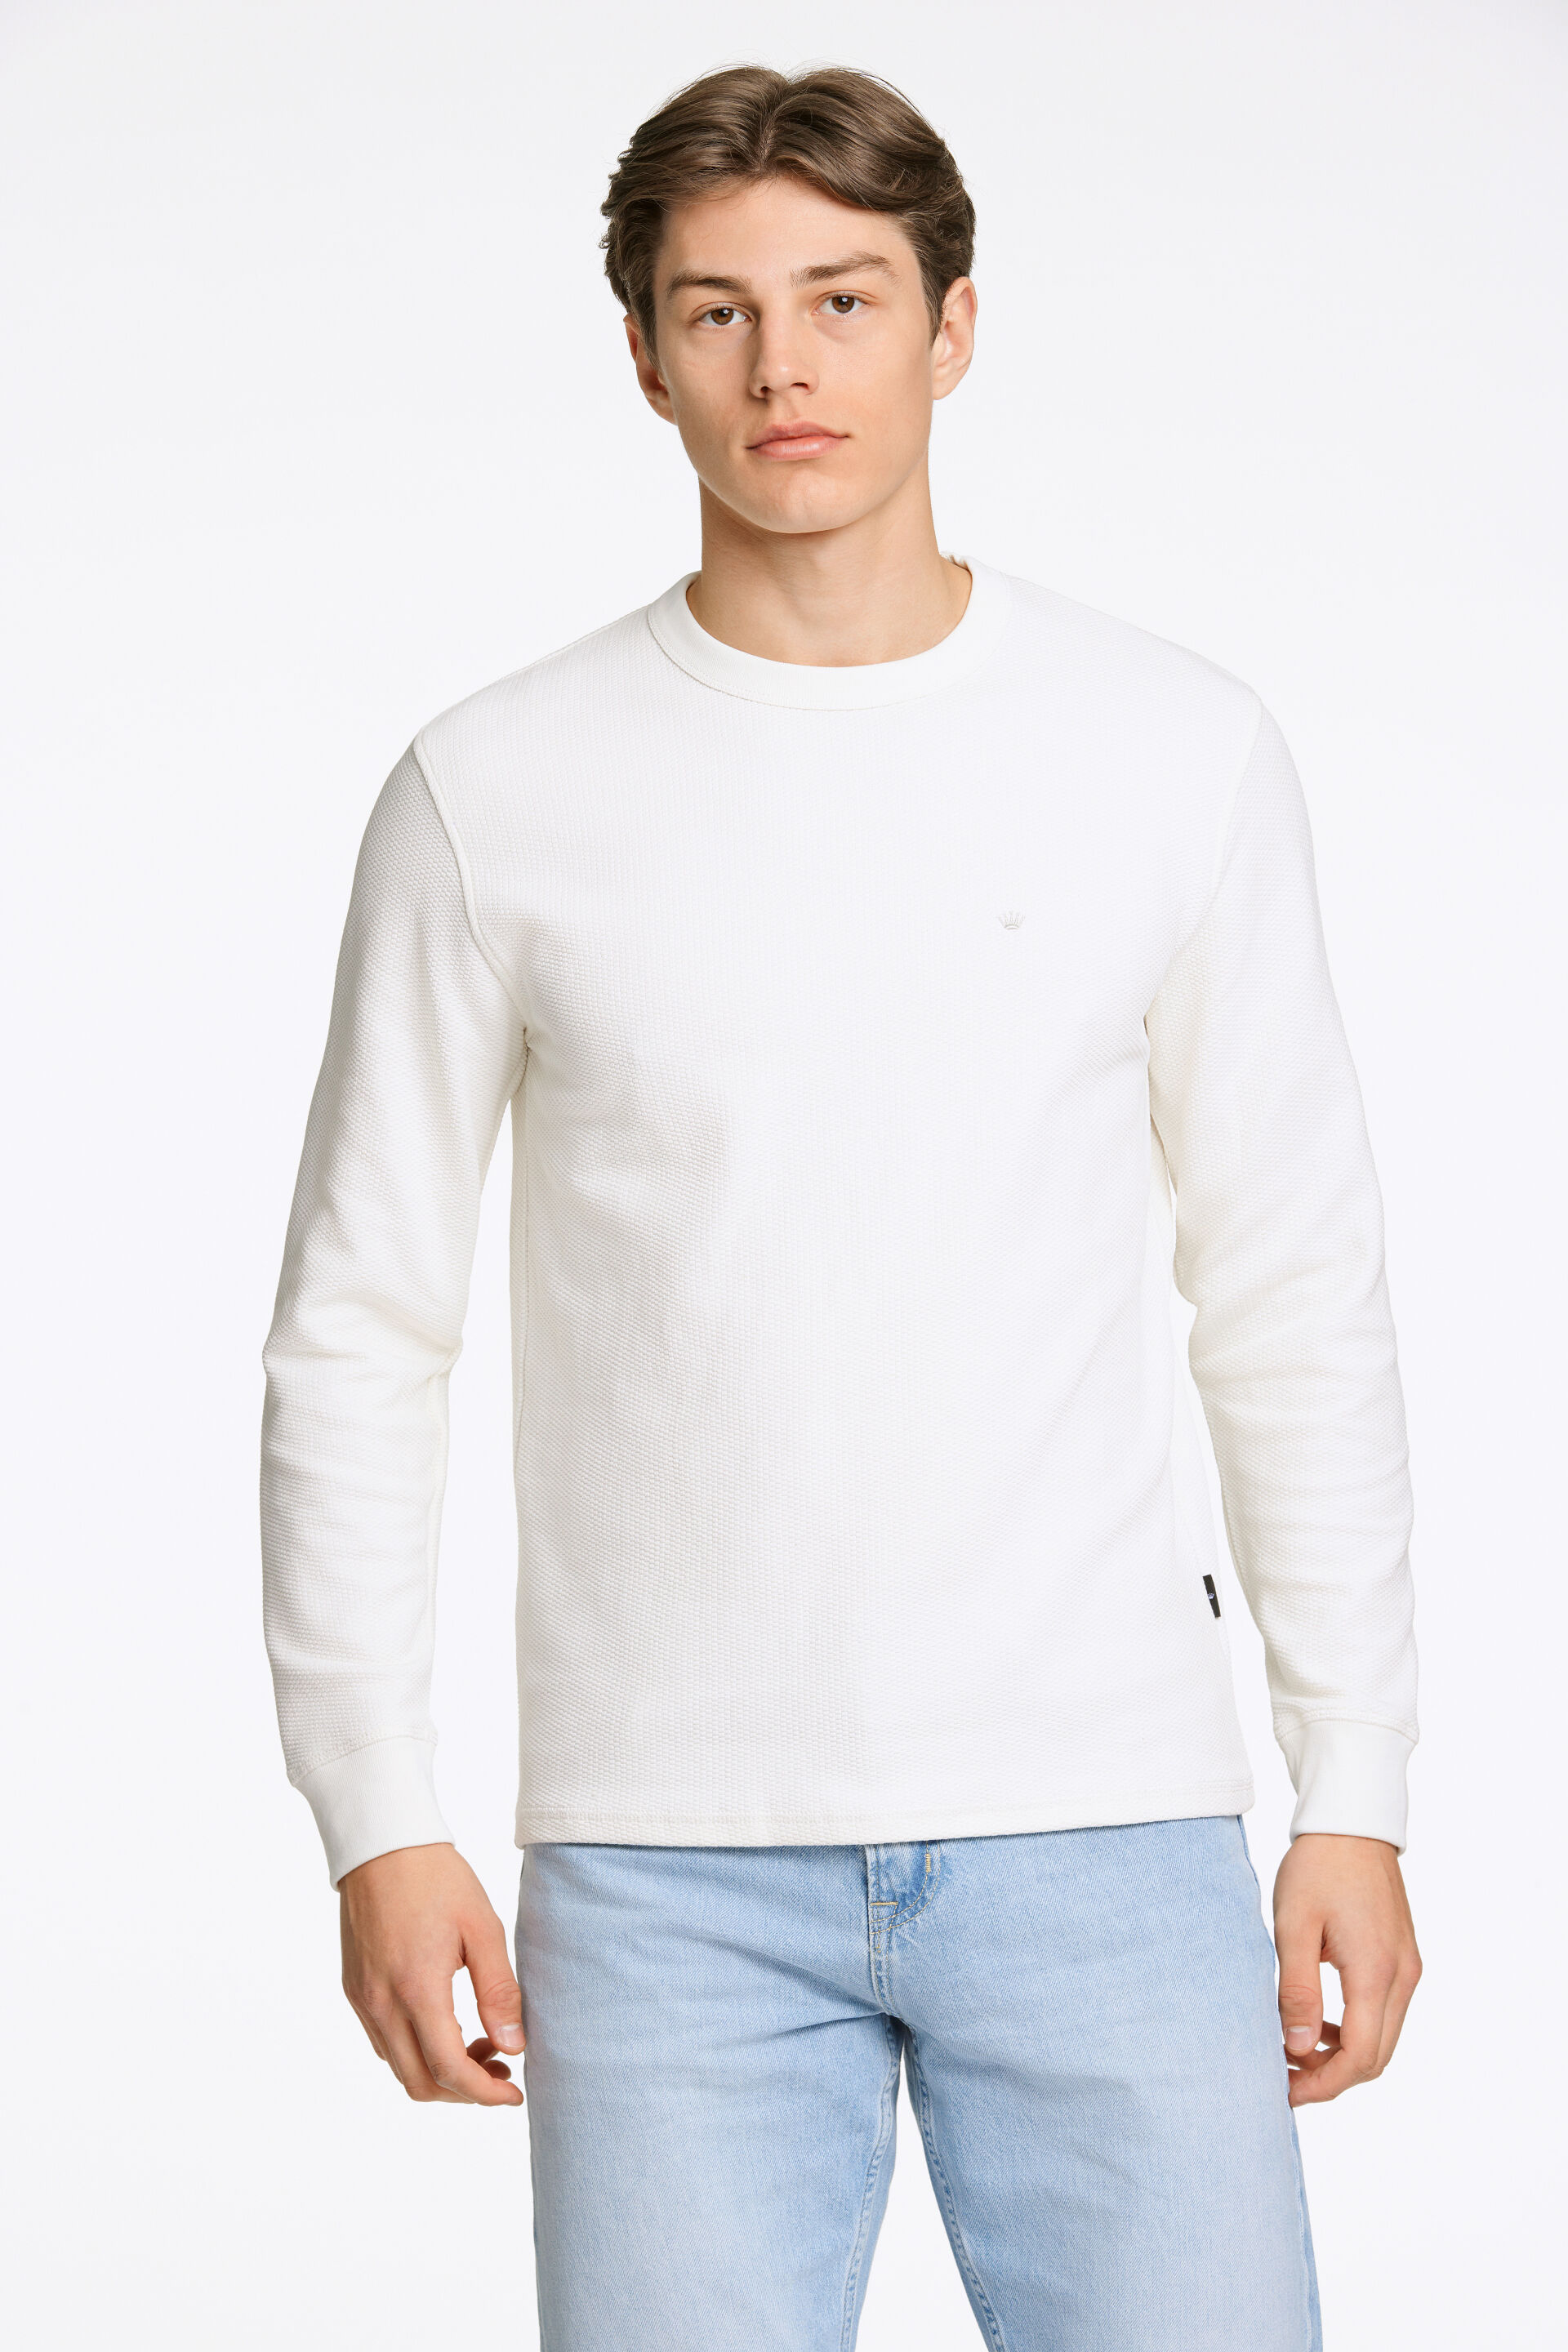 Junk de Luxe  Sweatshirt Hvid 60-702019